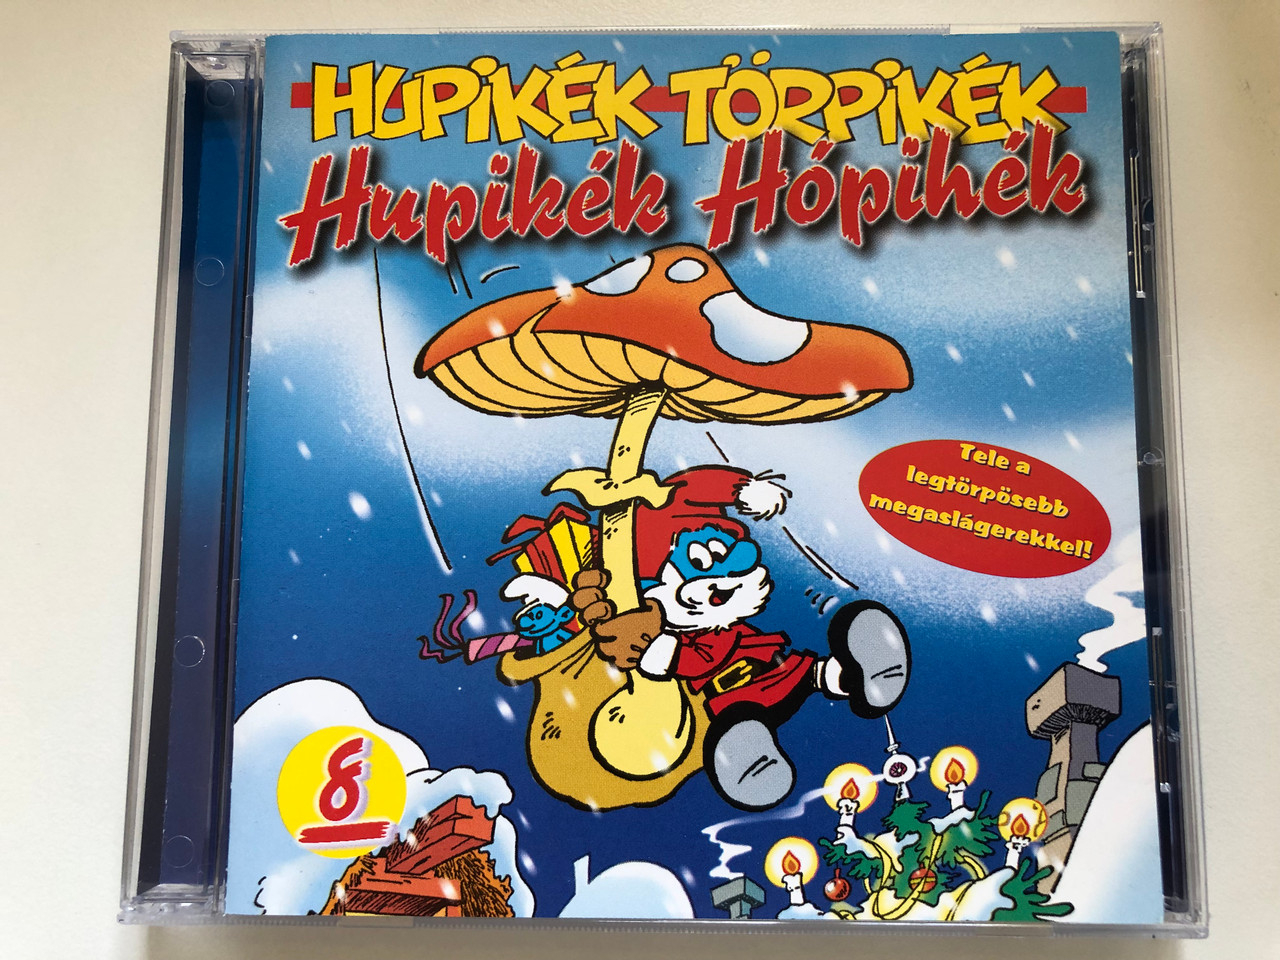 Hupikék Törpikék – 8: Hupikék Hópihék / Tele a legtorposebb  megaslagerekkel! / EMI Audio CD 2000 / 7243 530168 2 1 - Bible in My  Language